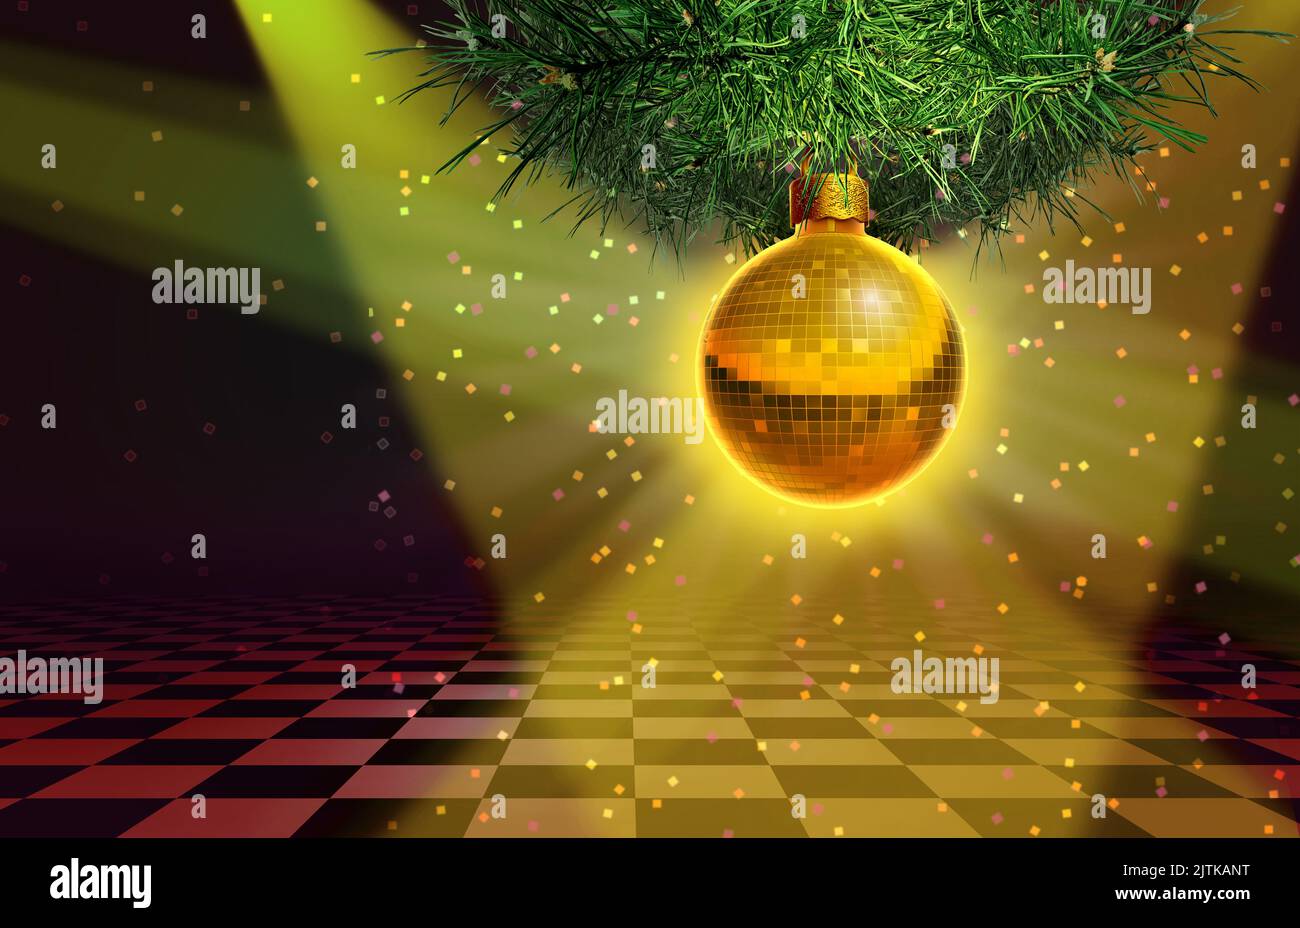 El fondo de la fiesta de Navidad y el acontecimiento de la fiesta de Nochevieja en una pista de baile con un adorno de árbol de temporada en forma de símbolo de bola de espejo de discoteca Foto de stock